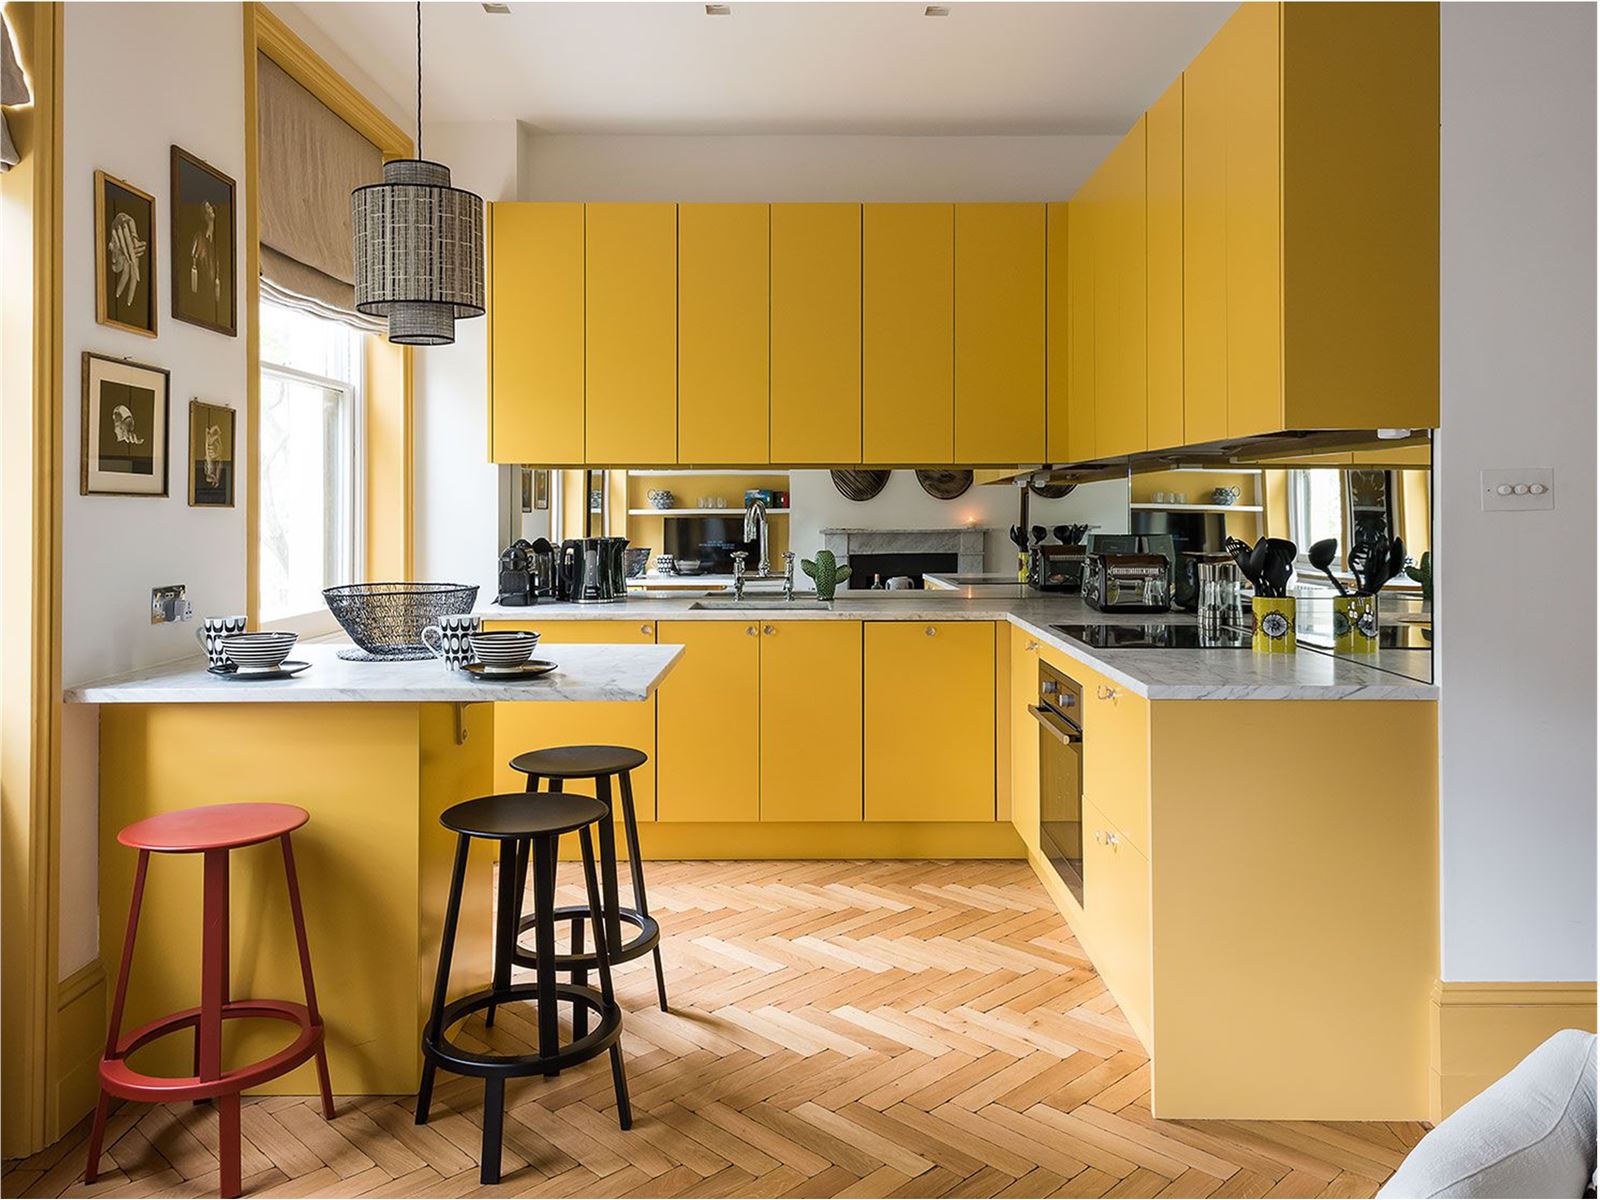 رنگ زرد در دکوراسیون آشپزخانه و بررسی 9 کابینت با ترکیب رنگ زرد